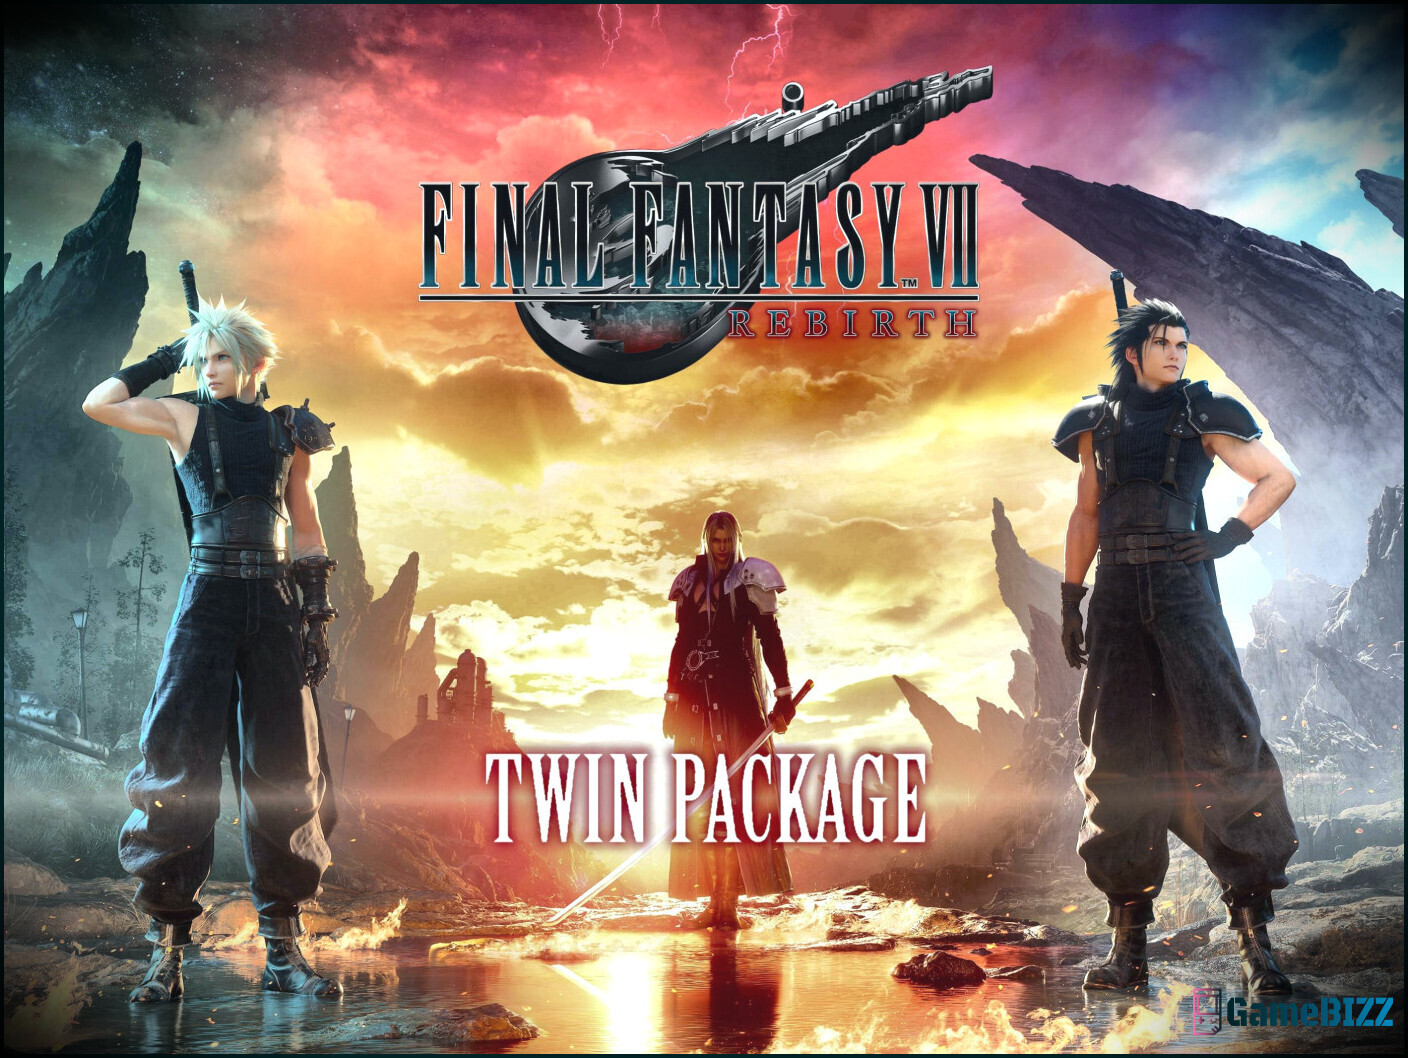 Kostenloses FF7-Remake mit Vorbestellung des Doppelpacks von Final Fantasy 7 Rebirth erhalten